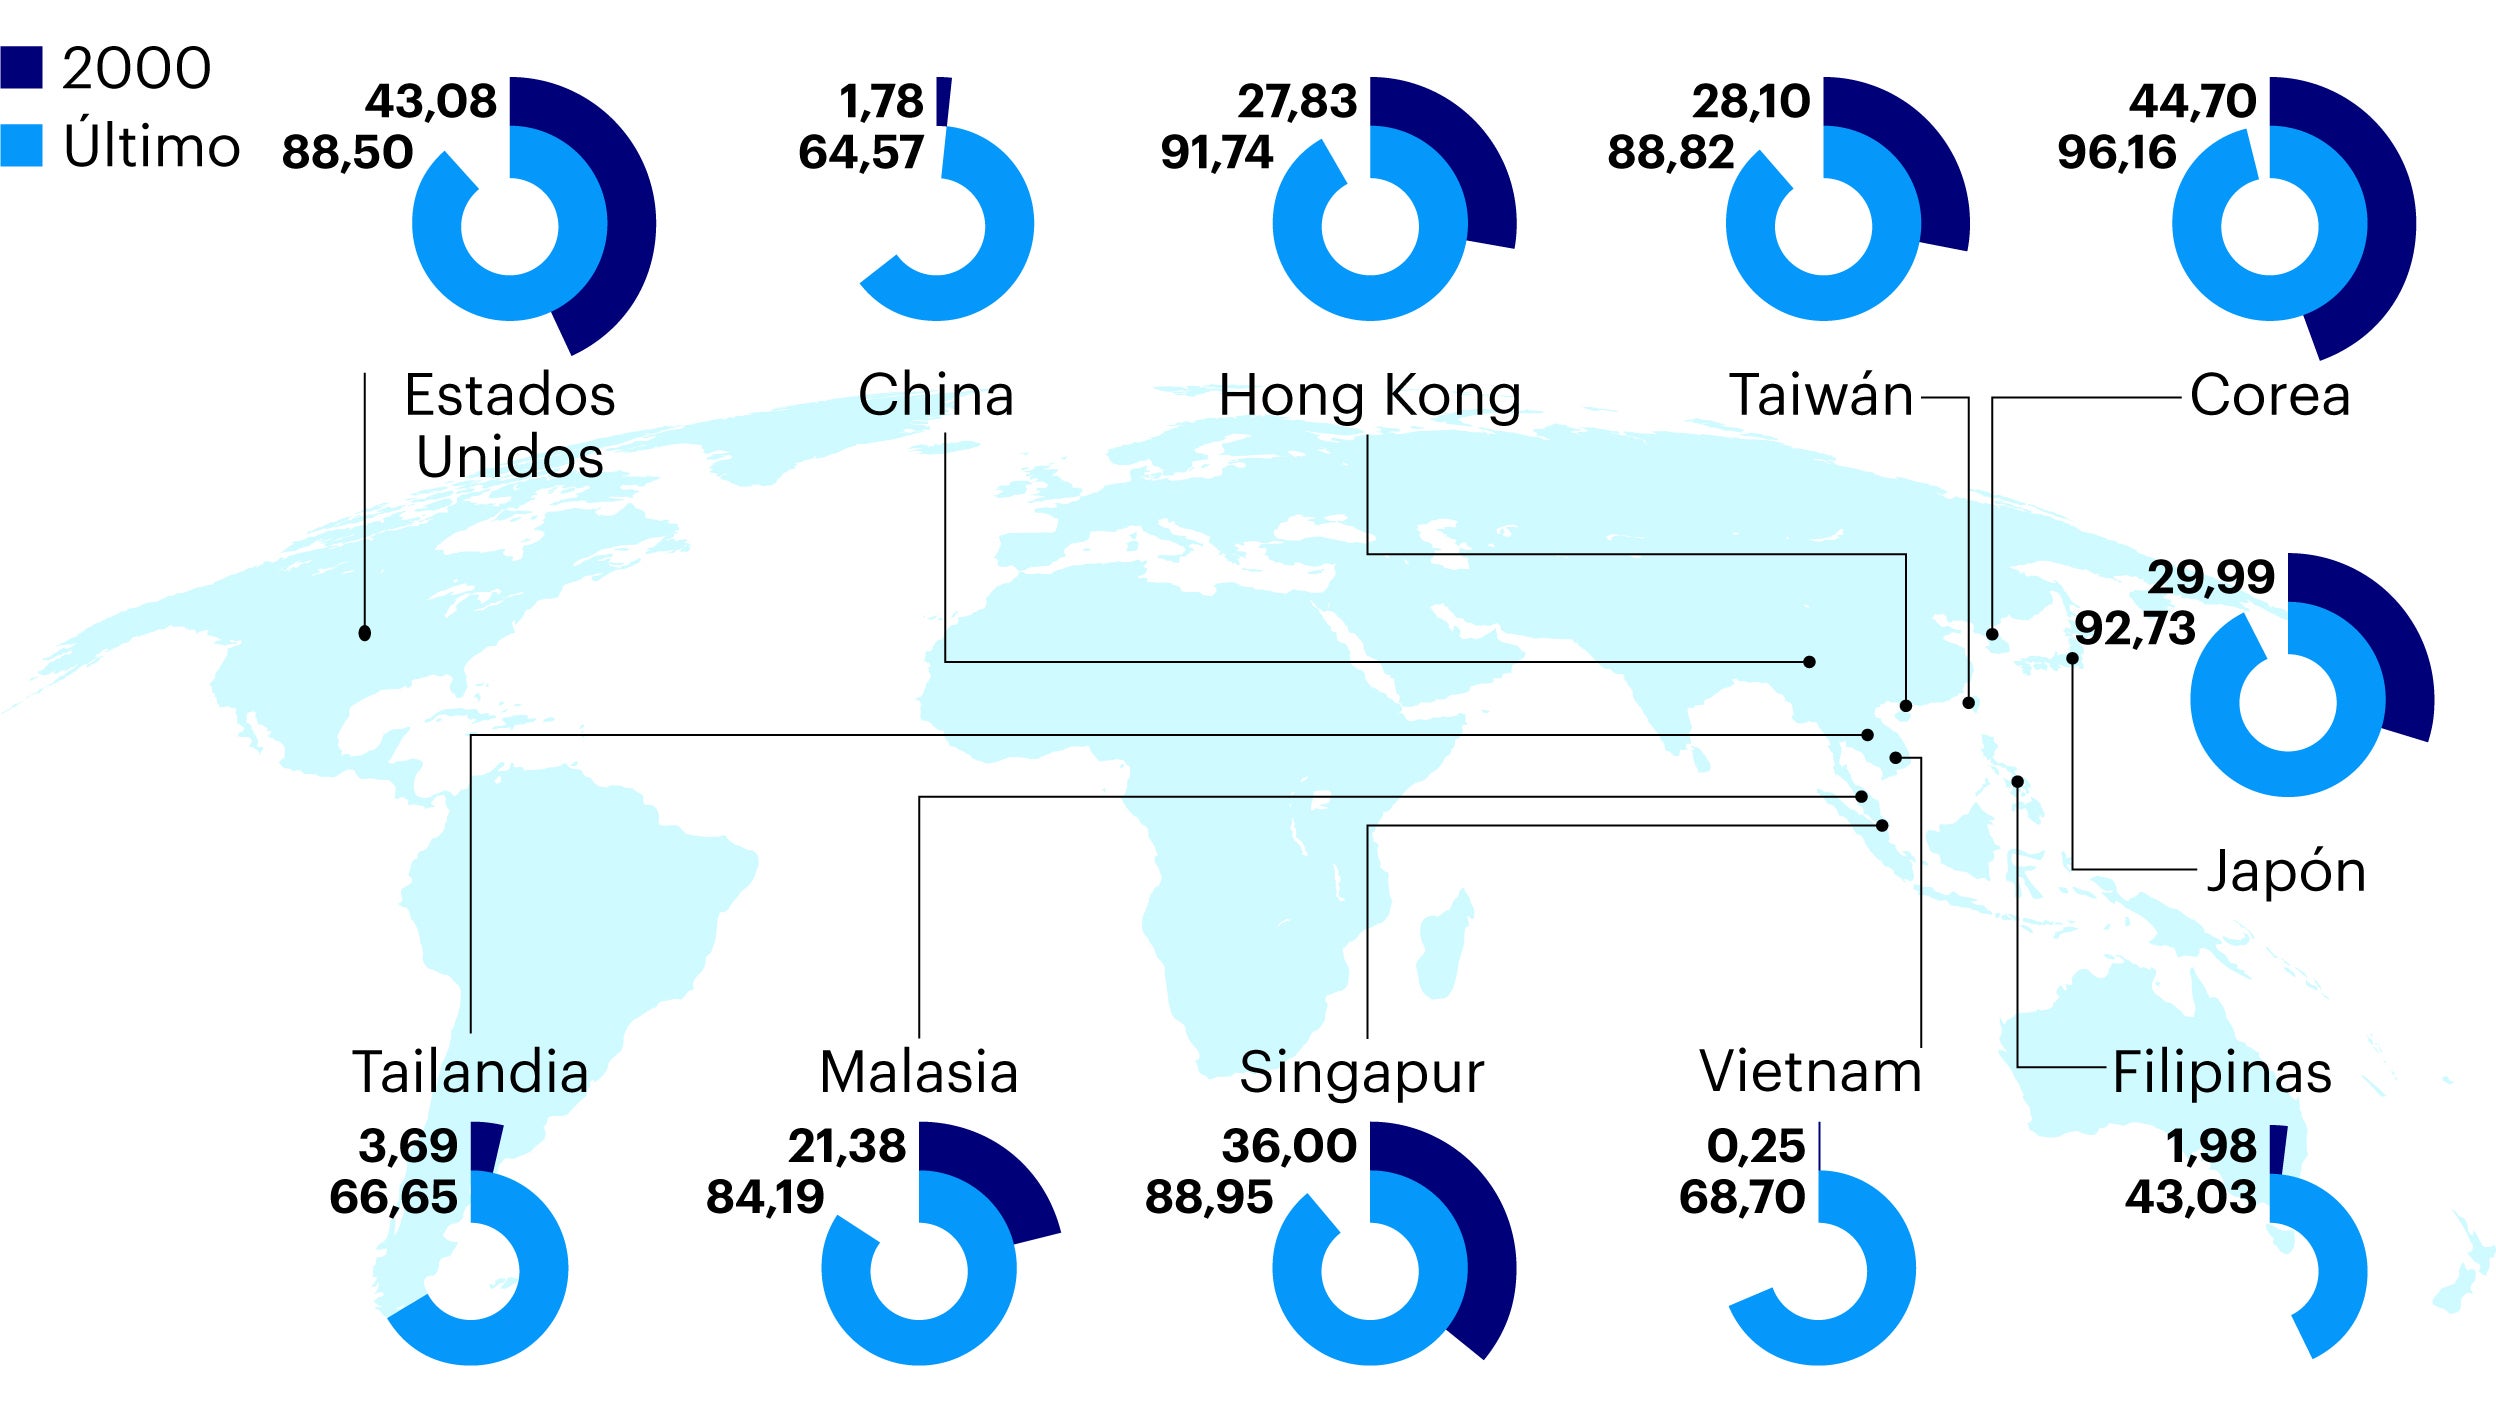 Figura 1: El consumo de internet ha aumentado significativamente en las principales economías asiáticas